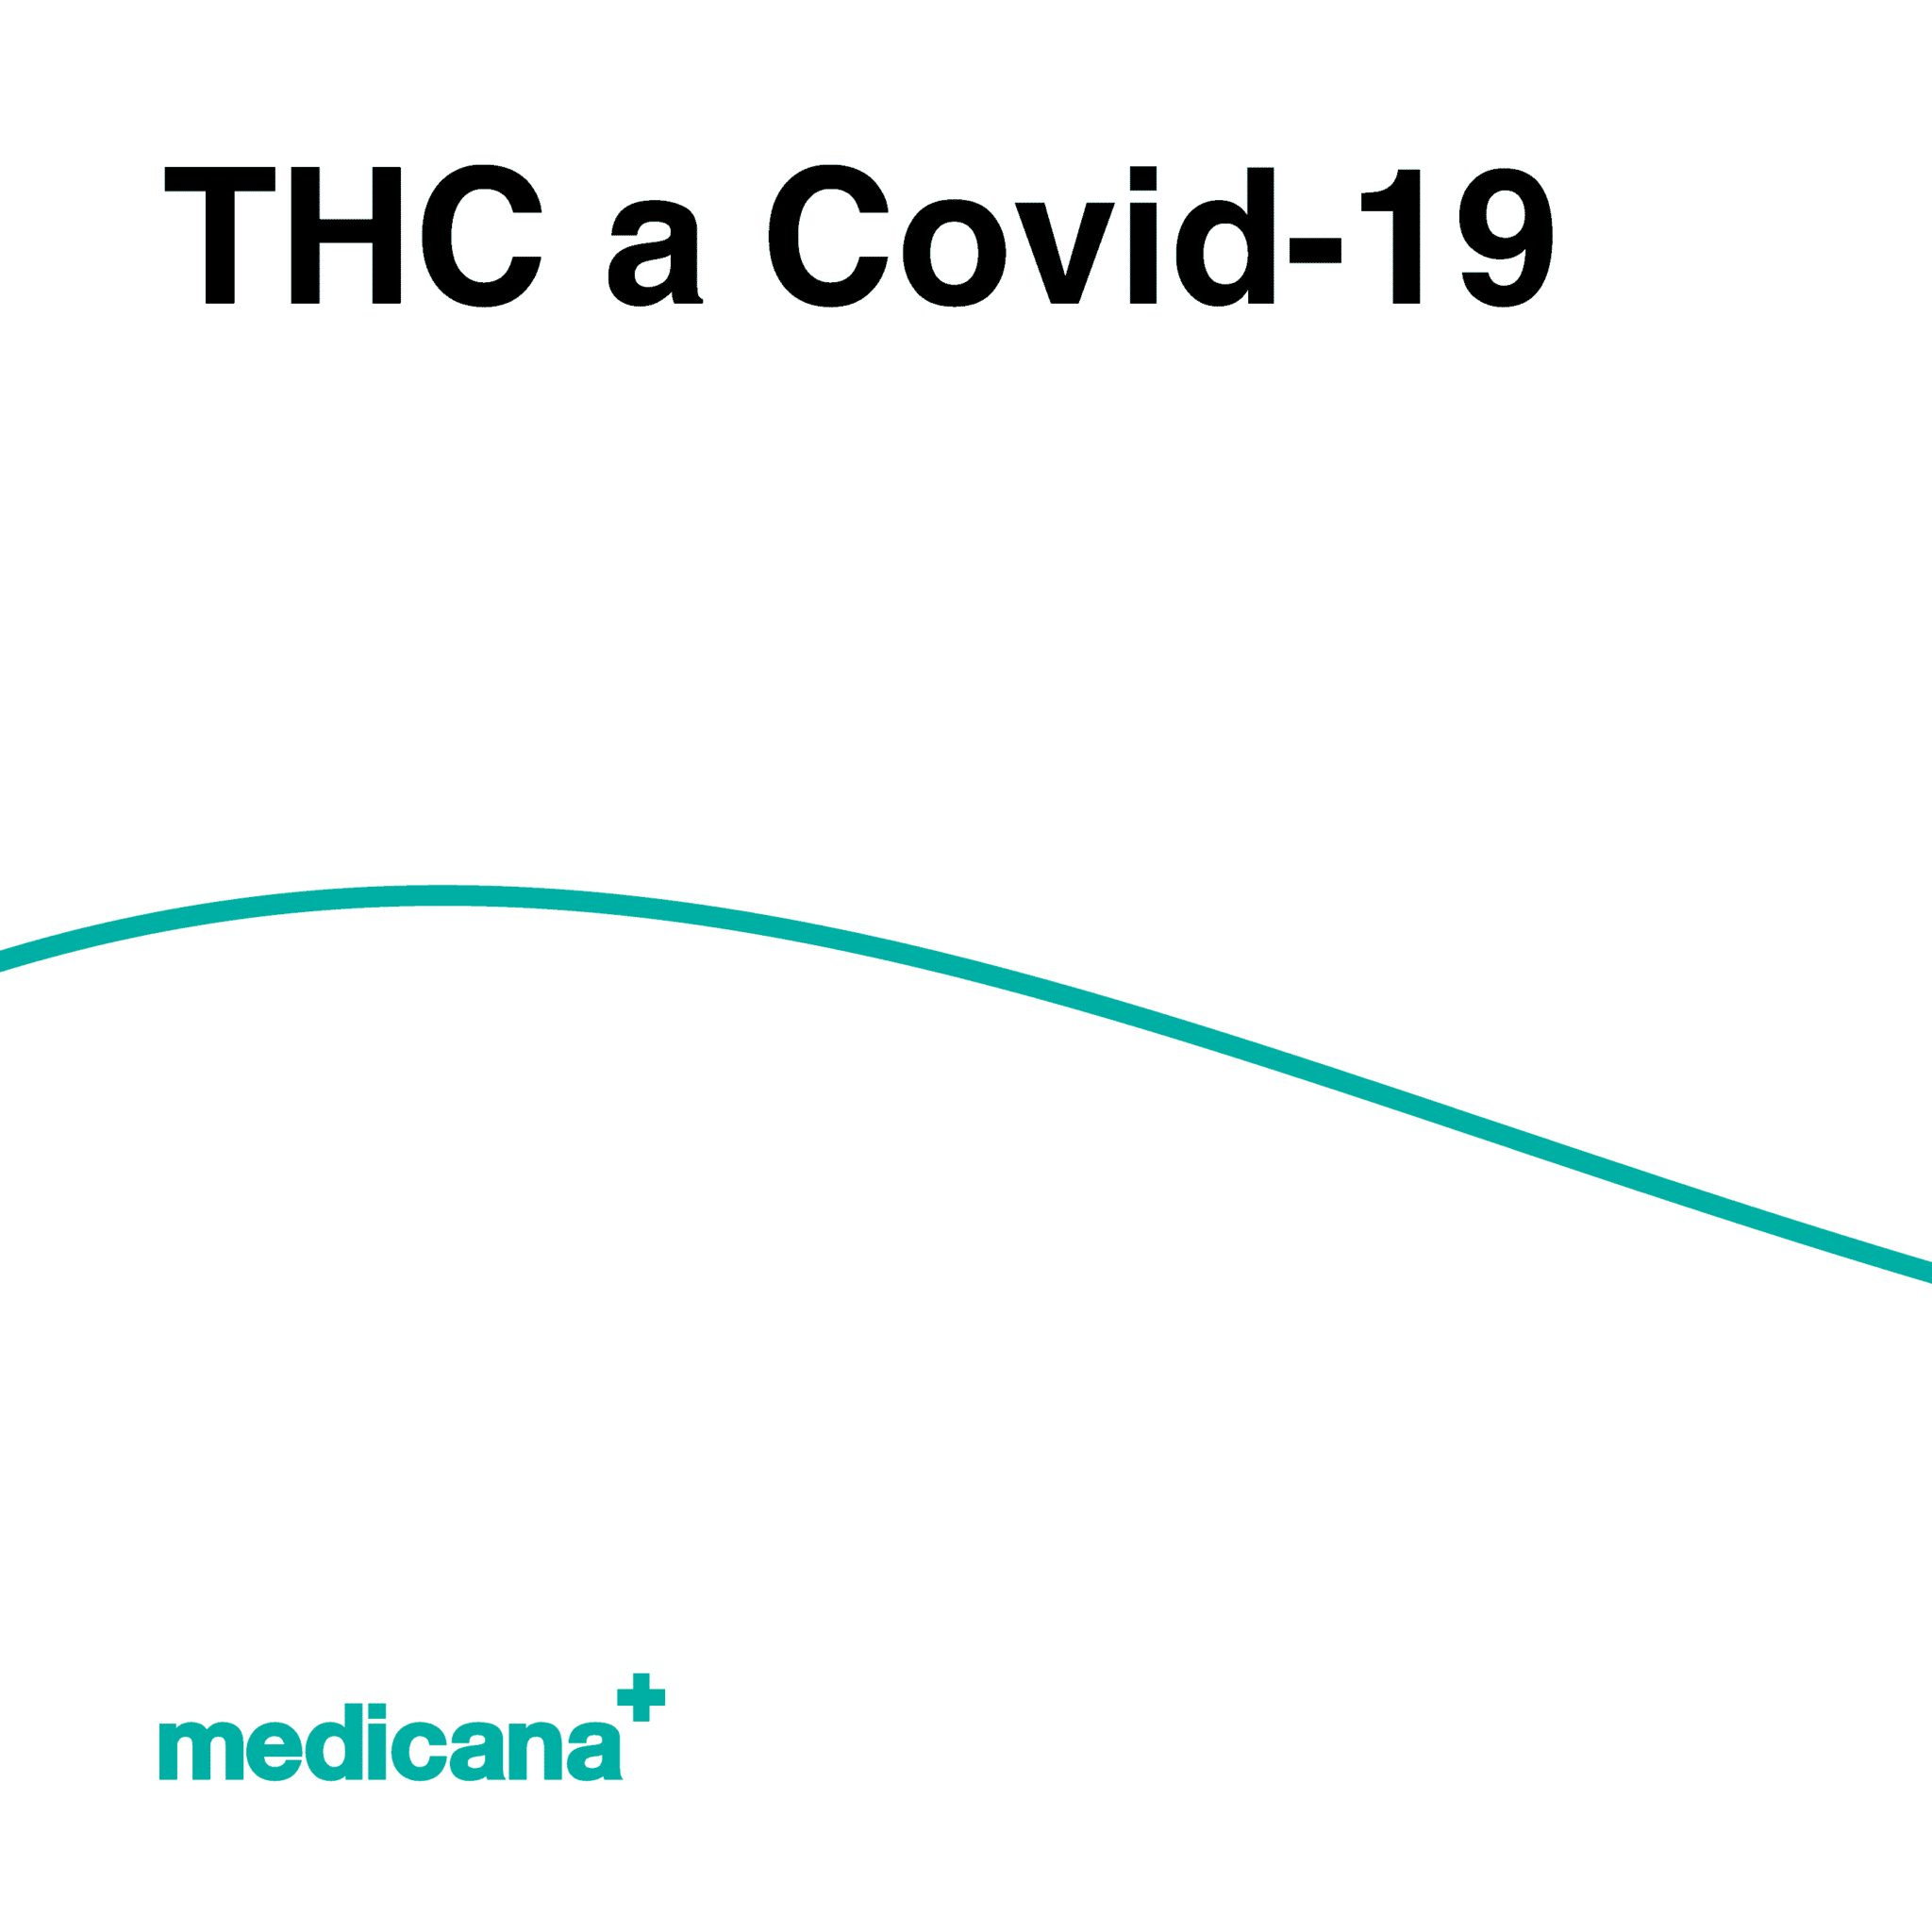 Grafika, białe tło z zieloną linią, czarnym napisem THC a Covid-19 i logo Medicana Centrum Terapii Medyczna Marihuana w lewym dolnym rogu.